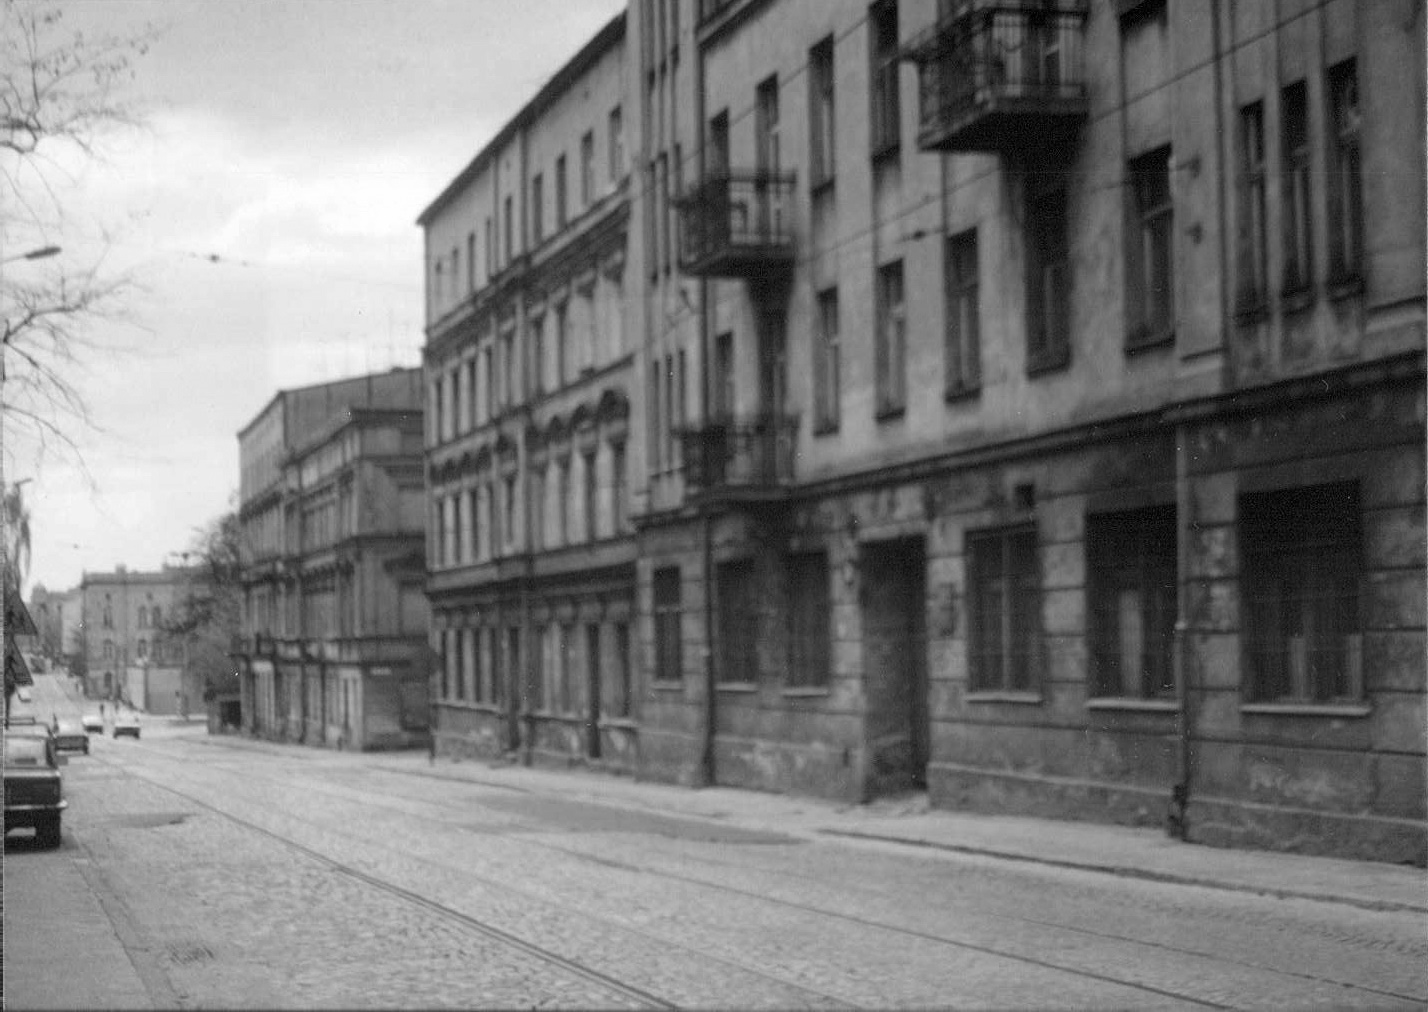 Street scene, Łódź, 1990